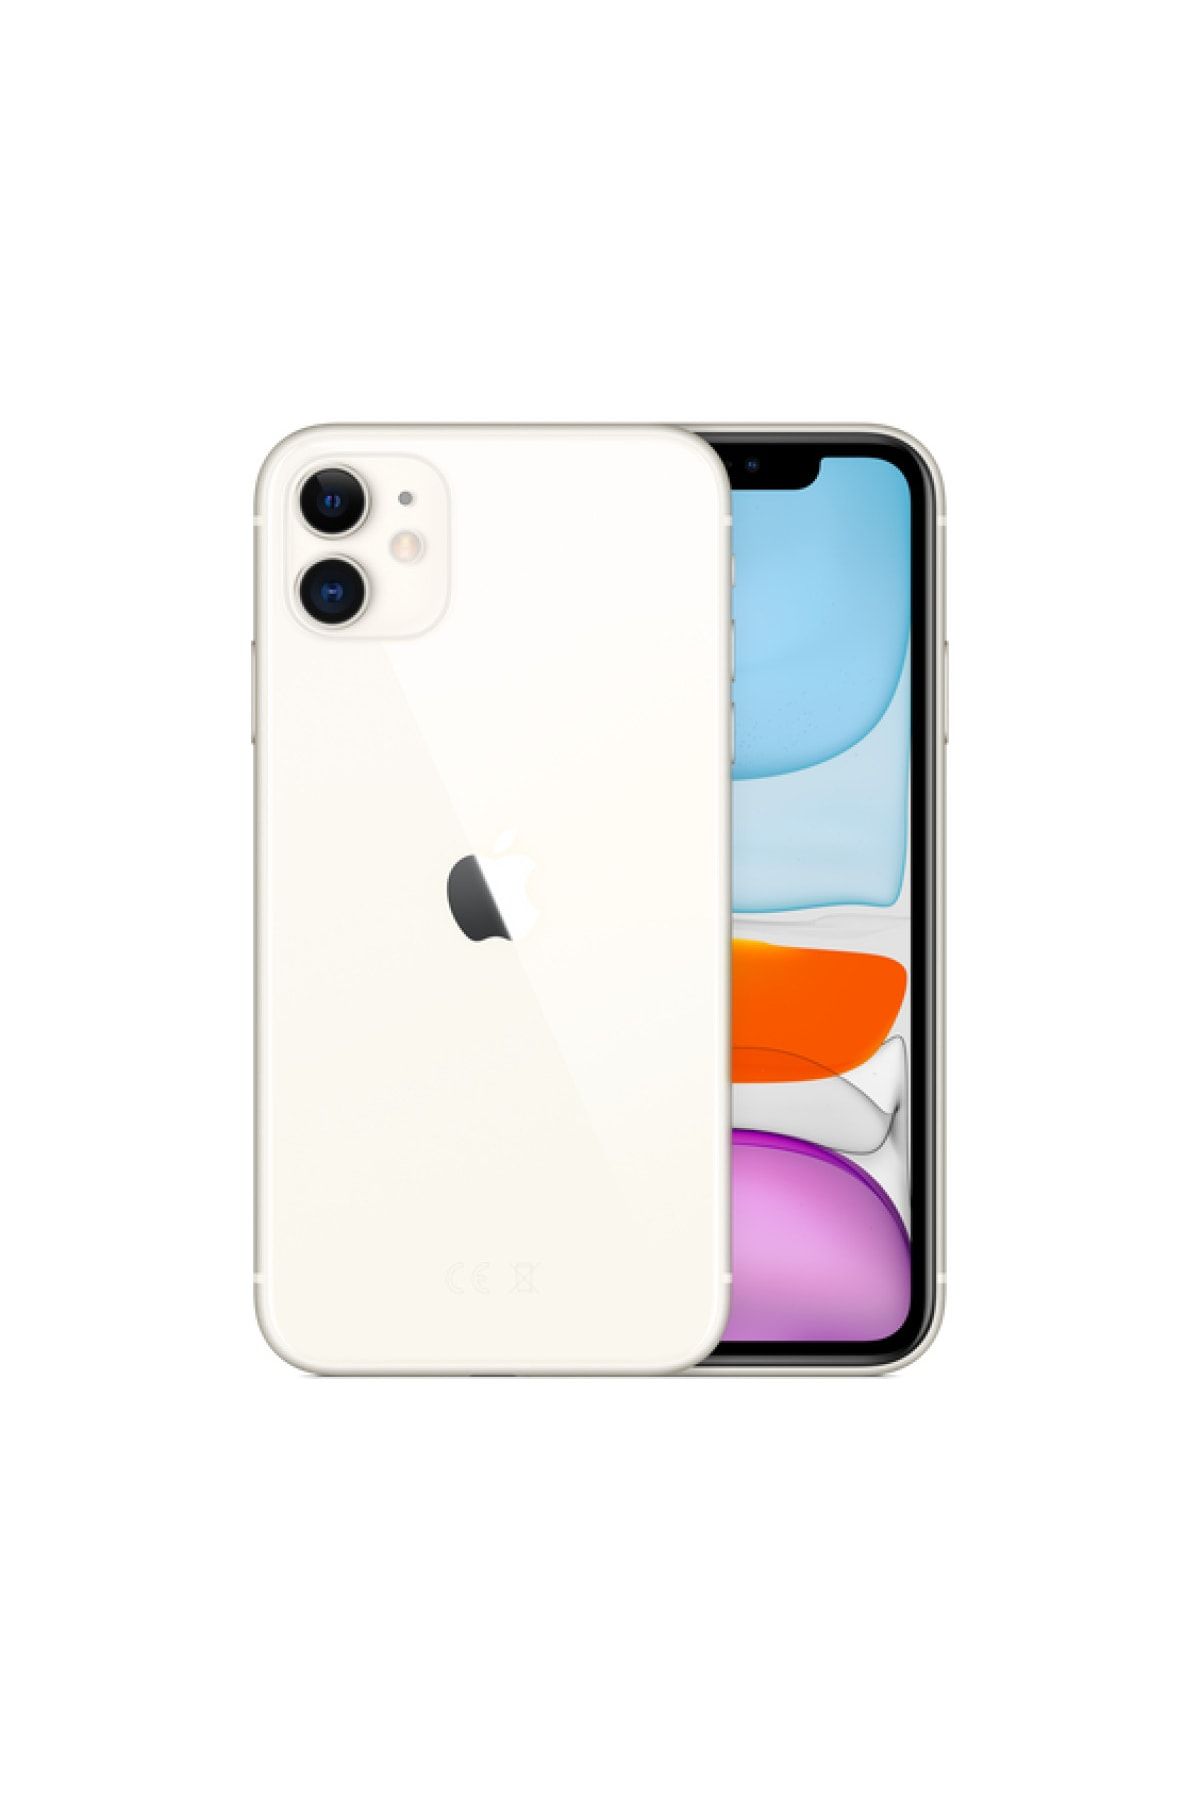 Apple Yenilenmiş iPhone 11 64 GB Beyaz Cep Telefonu (12 Ay Garantili) - B Kalite